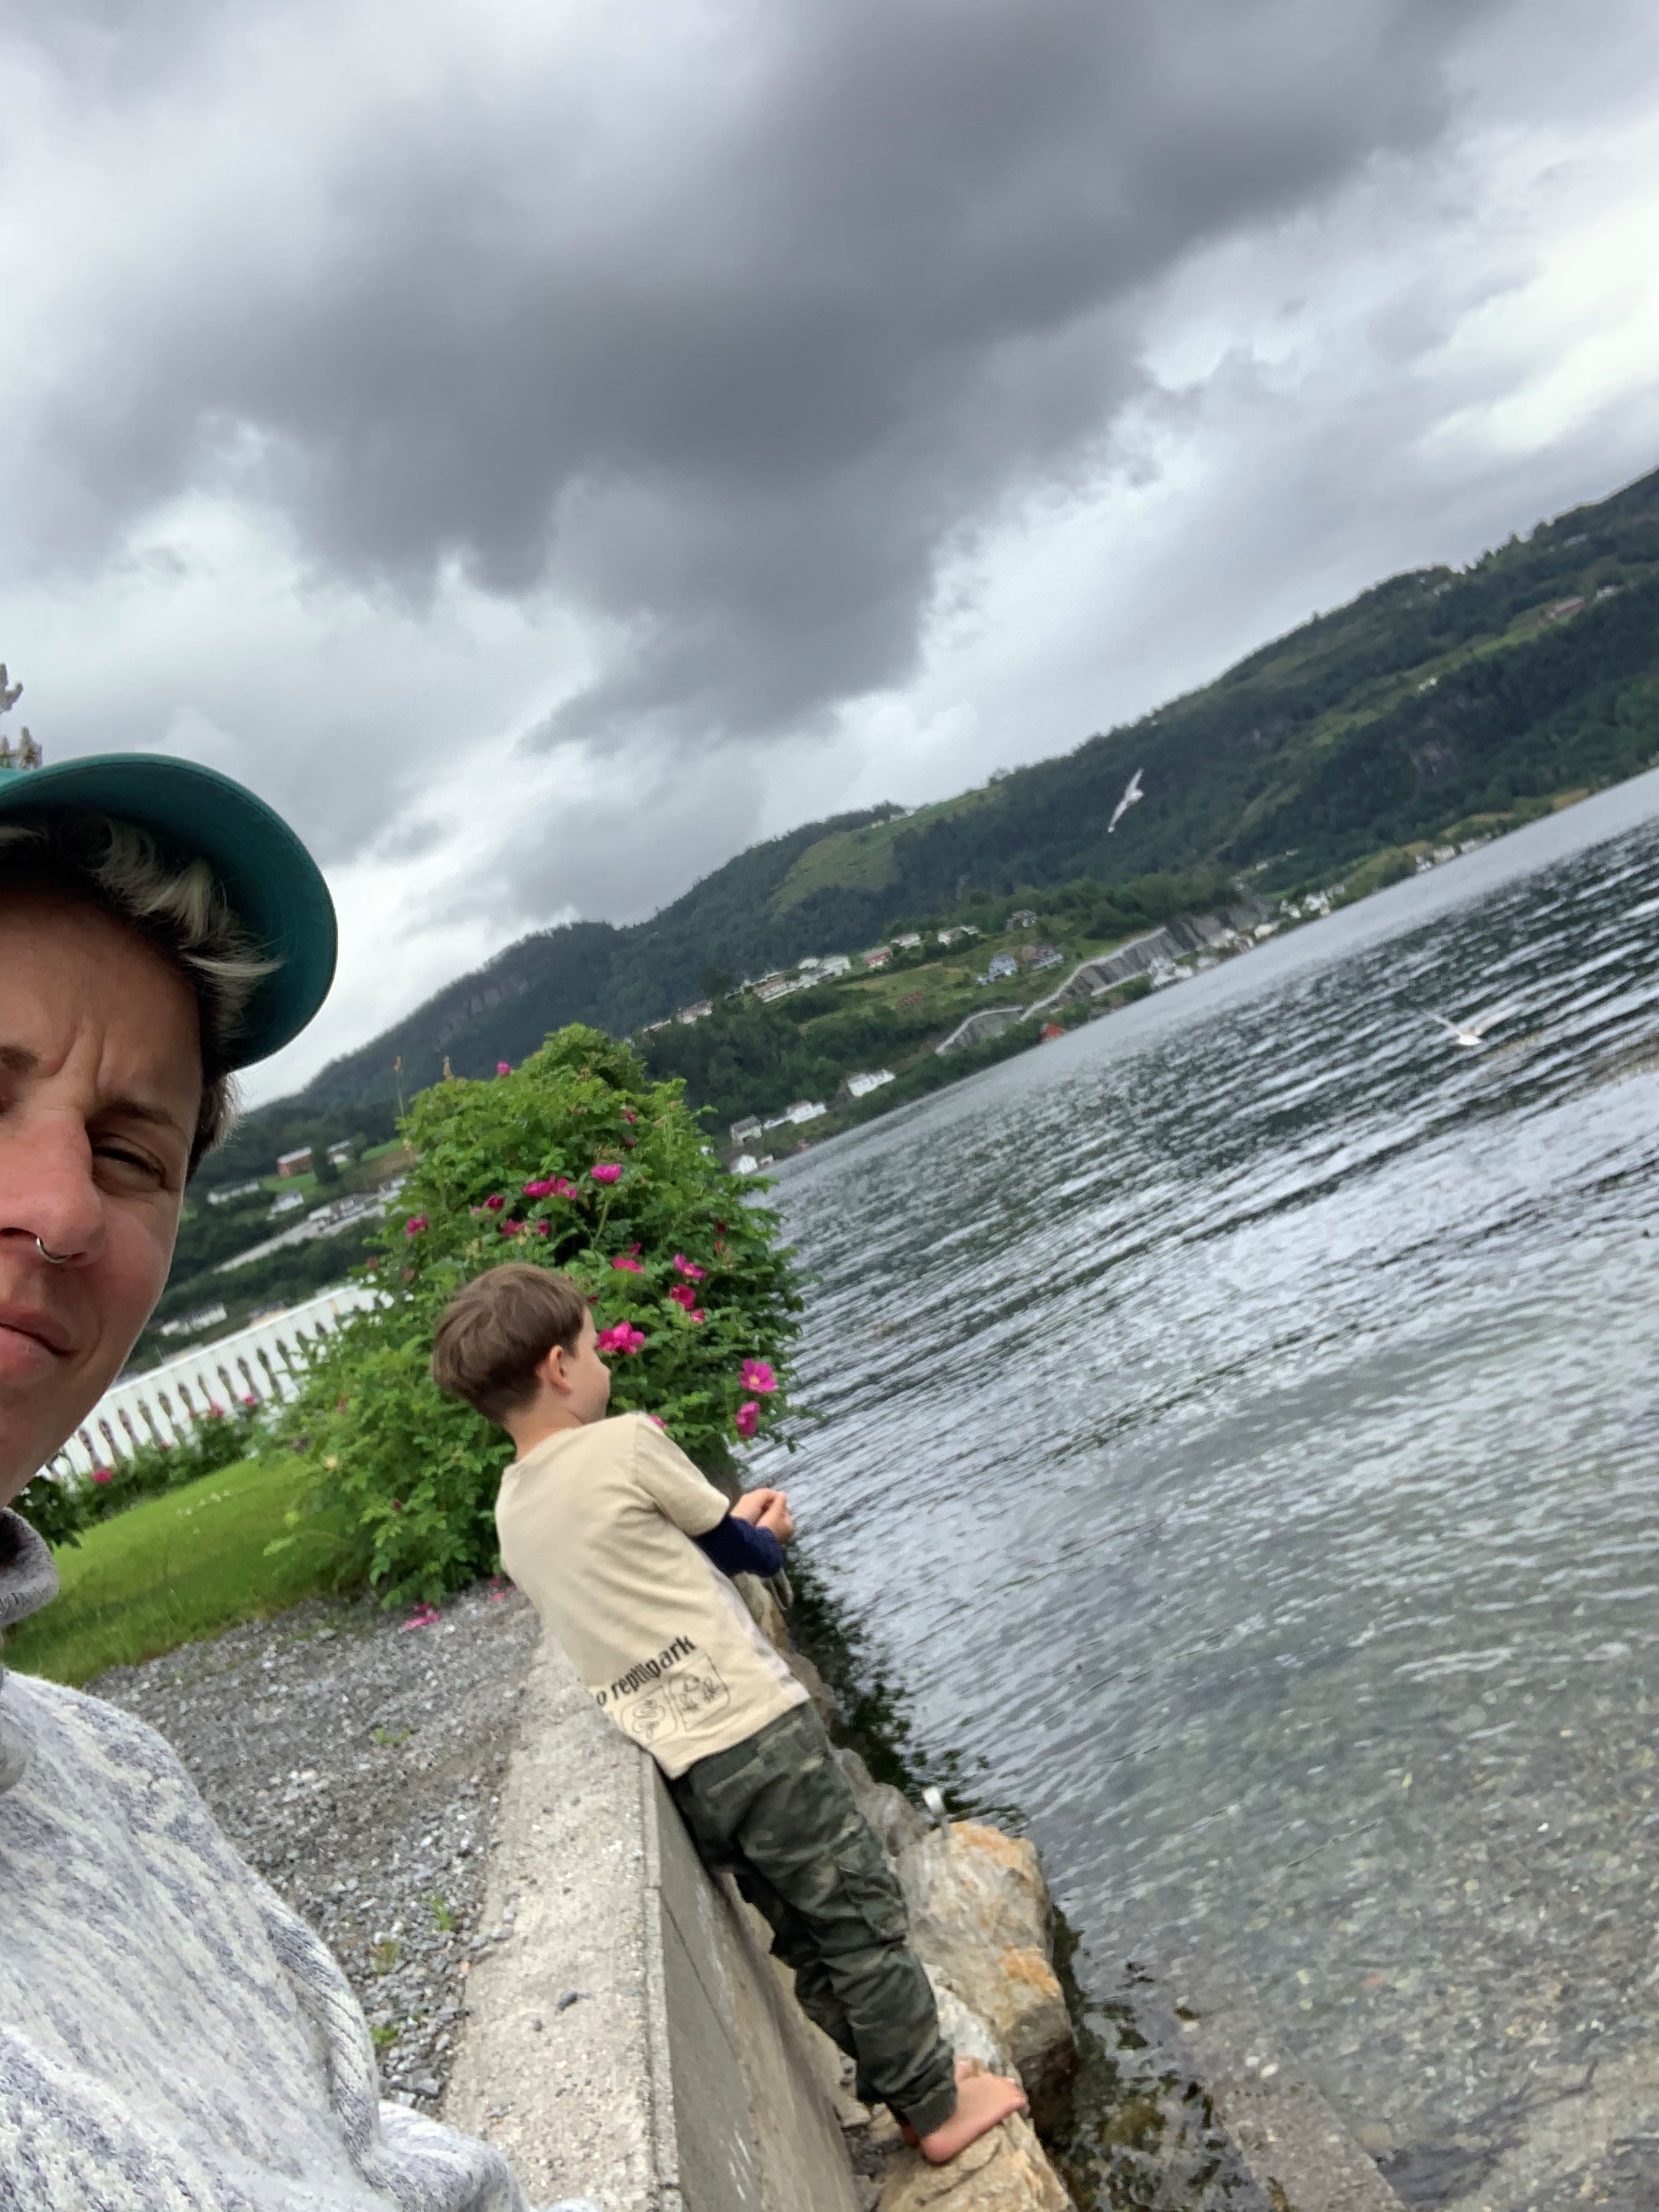 Selfie av Heidi Marie Vestrheim med caps, i bakgrunn ser vi sønnen står ved et vann med ryggen til.